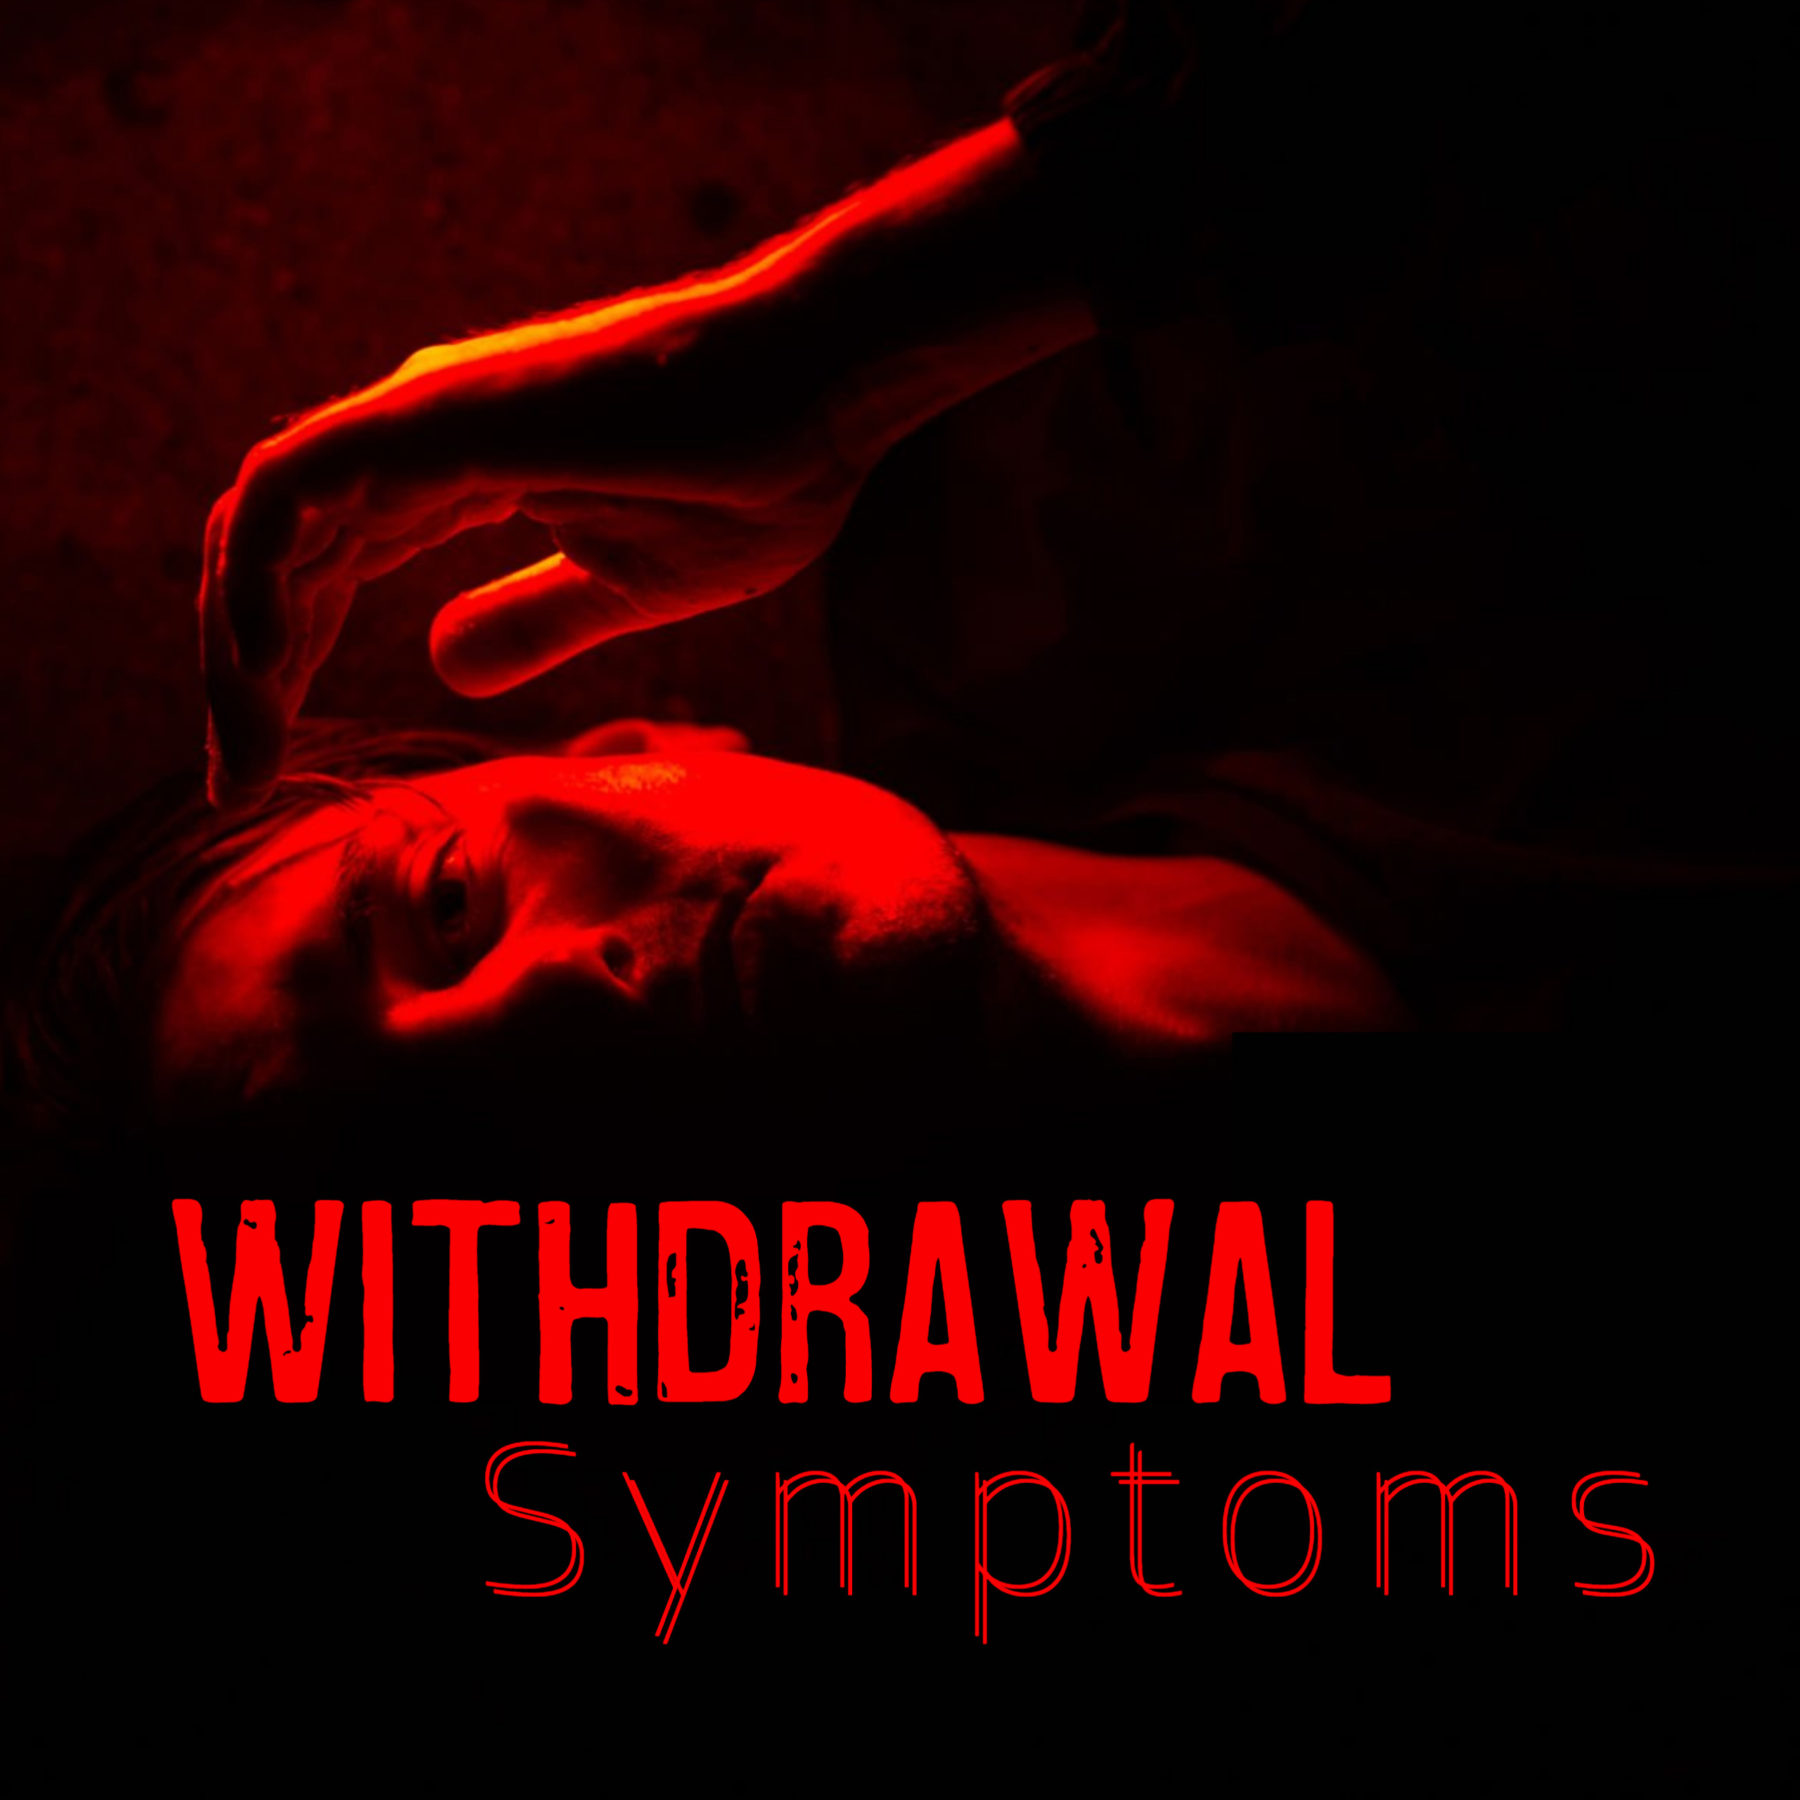 withdrawal symptoms